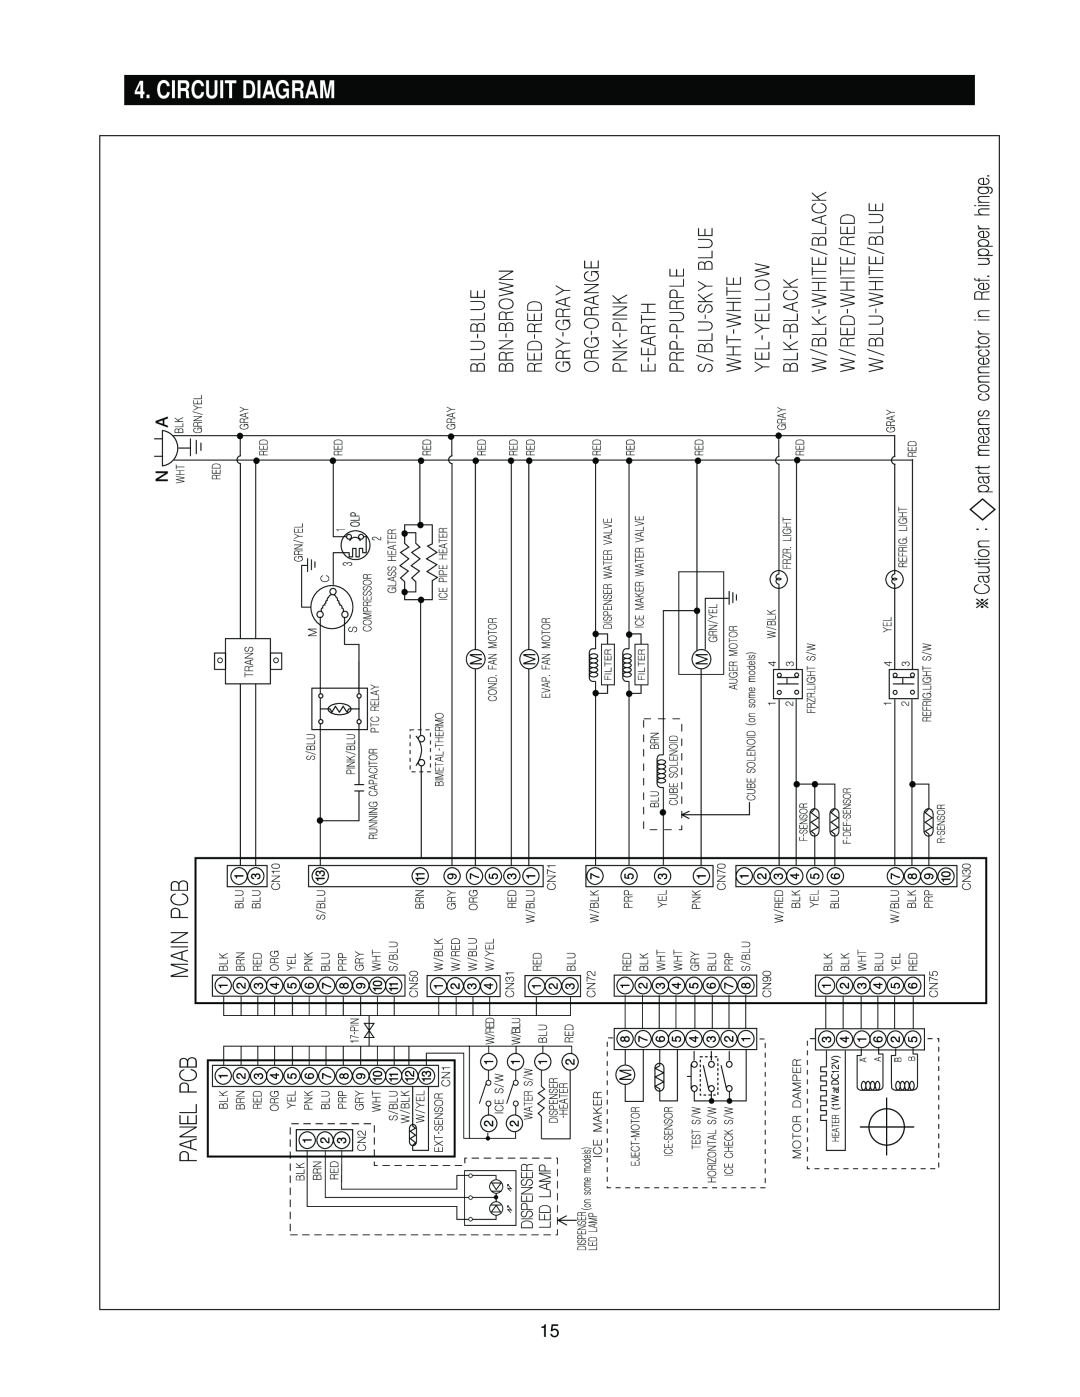 Samsung RS2*3* manual Circuit Diagram 